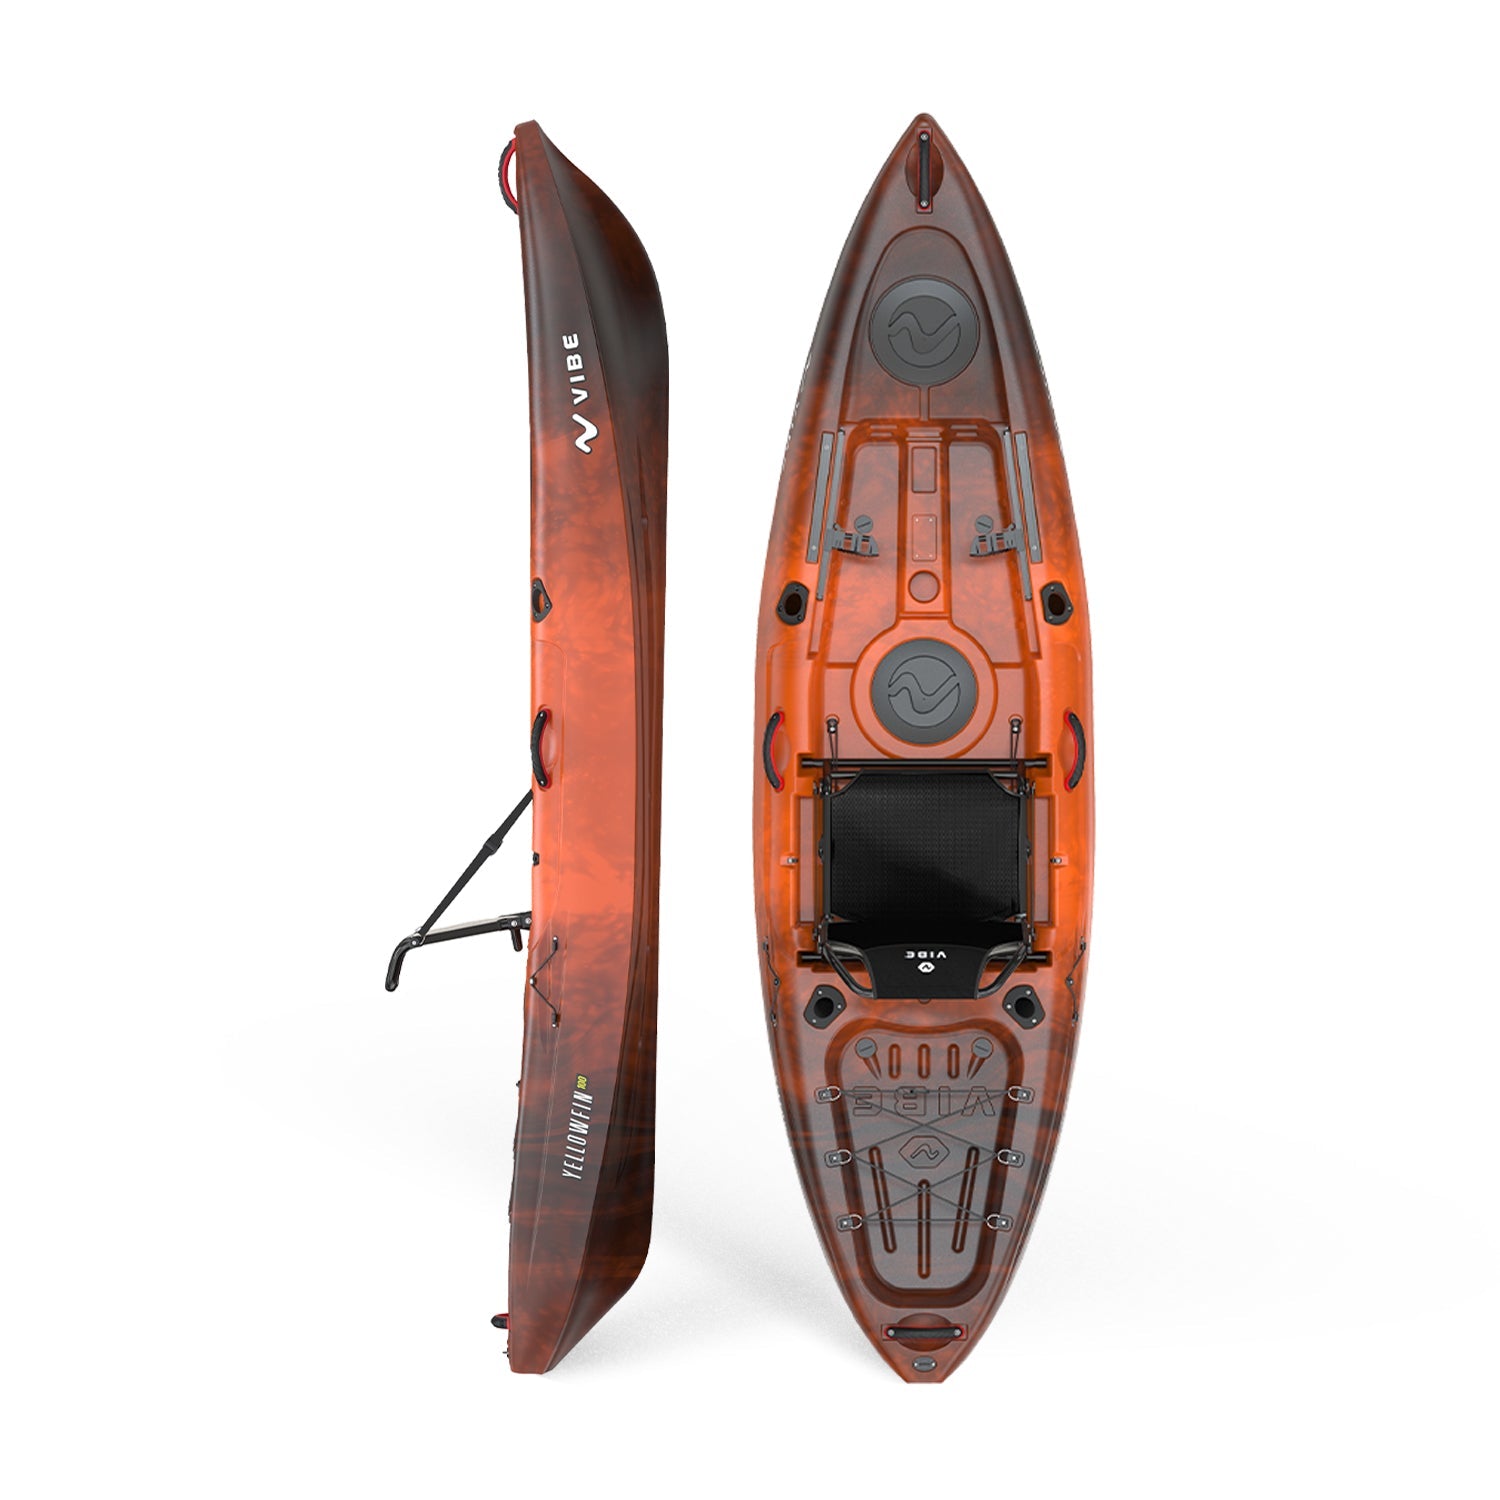 Rigging 8ft Kayak : r/kayakfishing